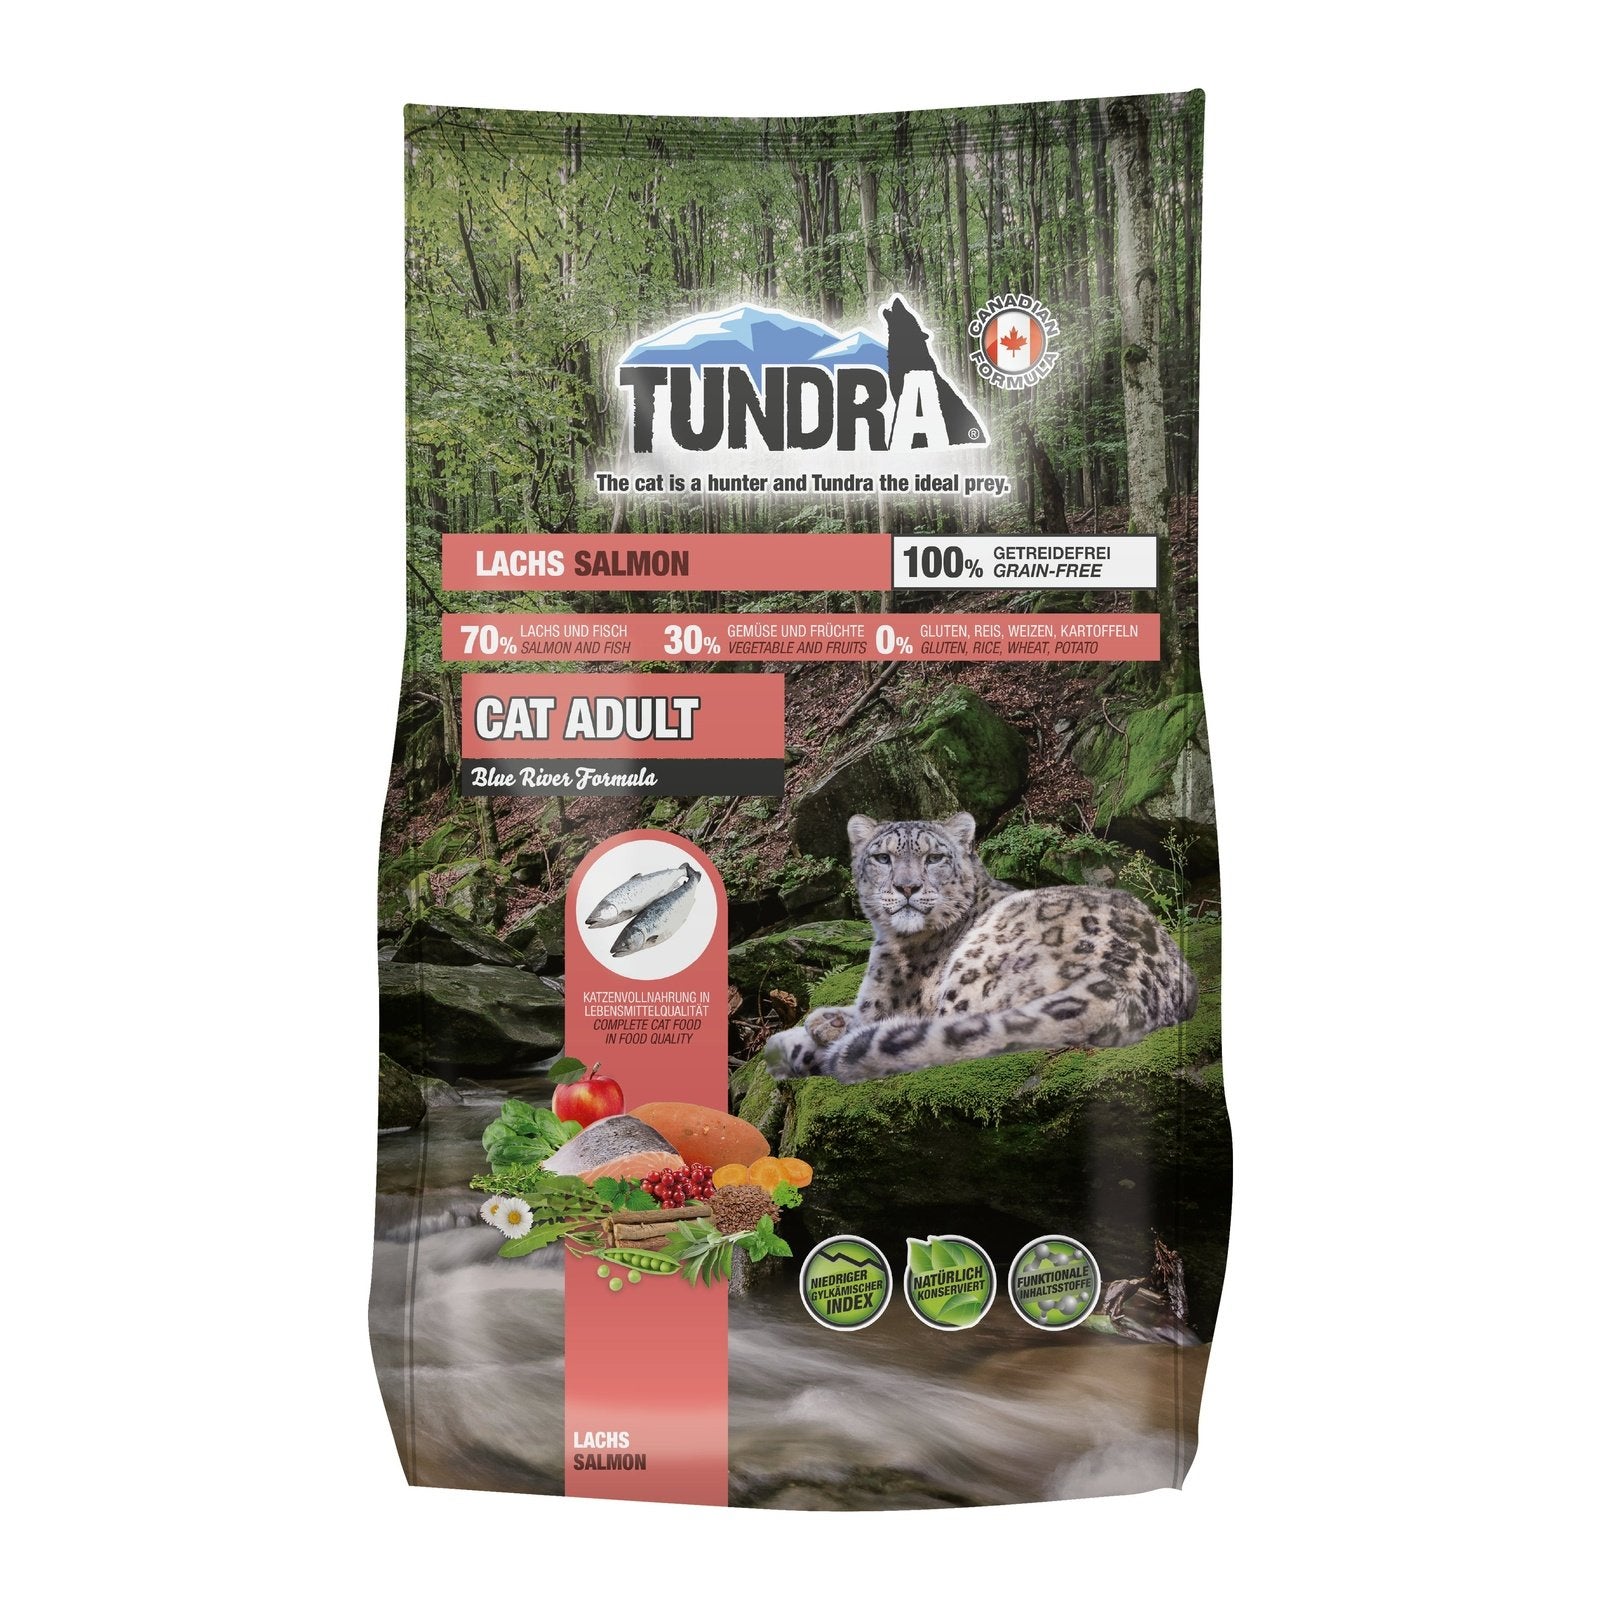 Artikel mit dem Namen Tundra Katze Salmon Trockenfutter im Shop von zoo.de , dem Onlineshop für nachhaltiges Hundefutter und Katzenfutter.